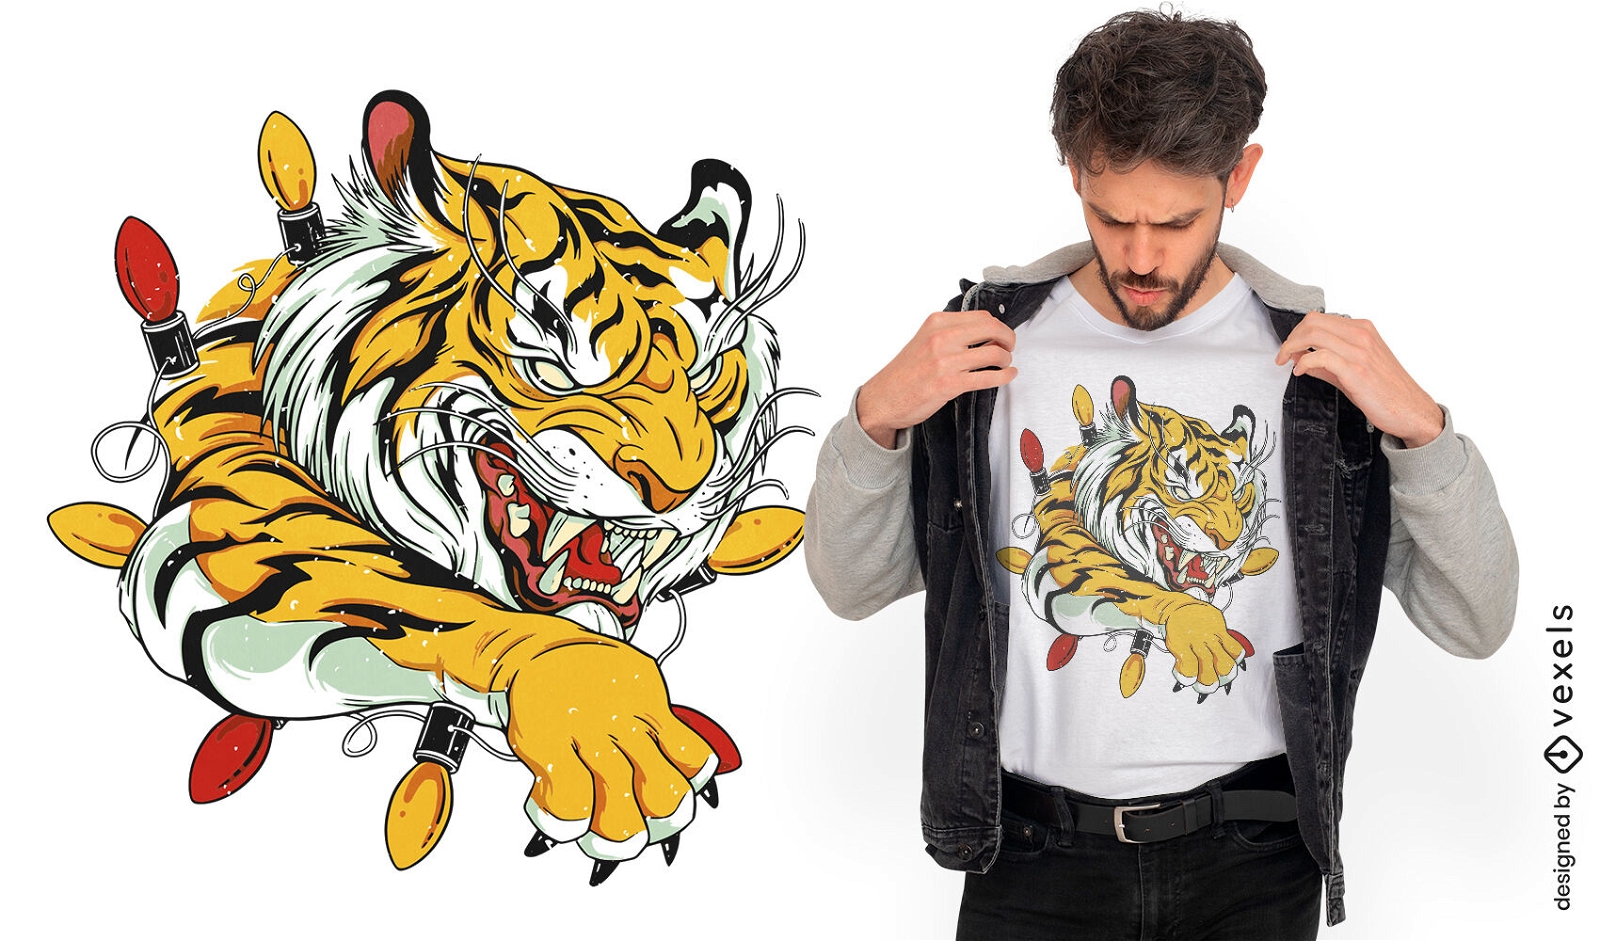 Dise?o de camiseta de salto de animal tigre.